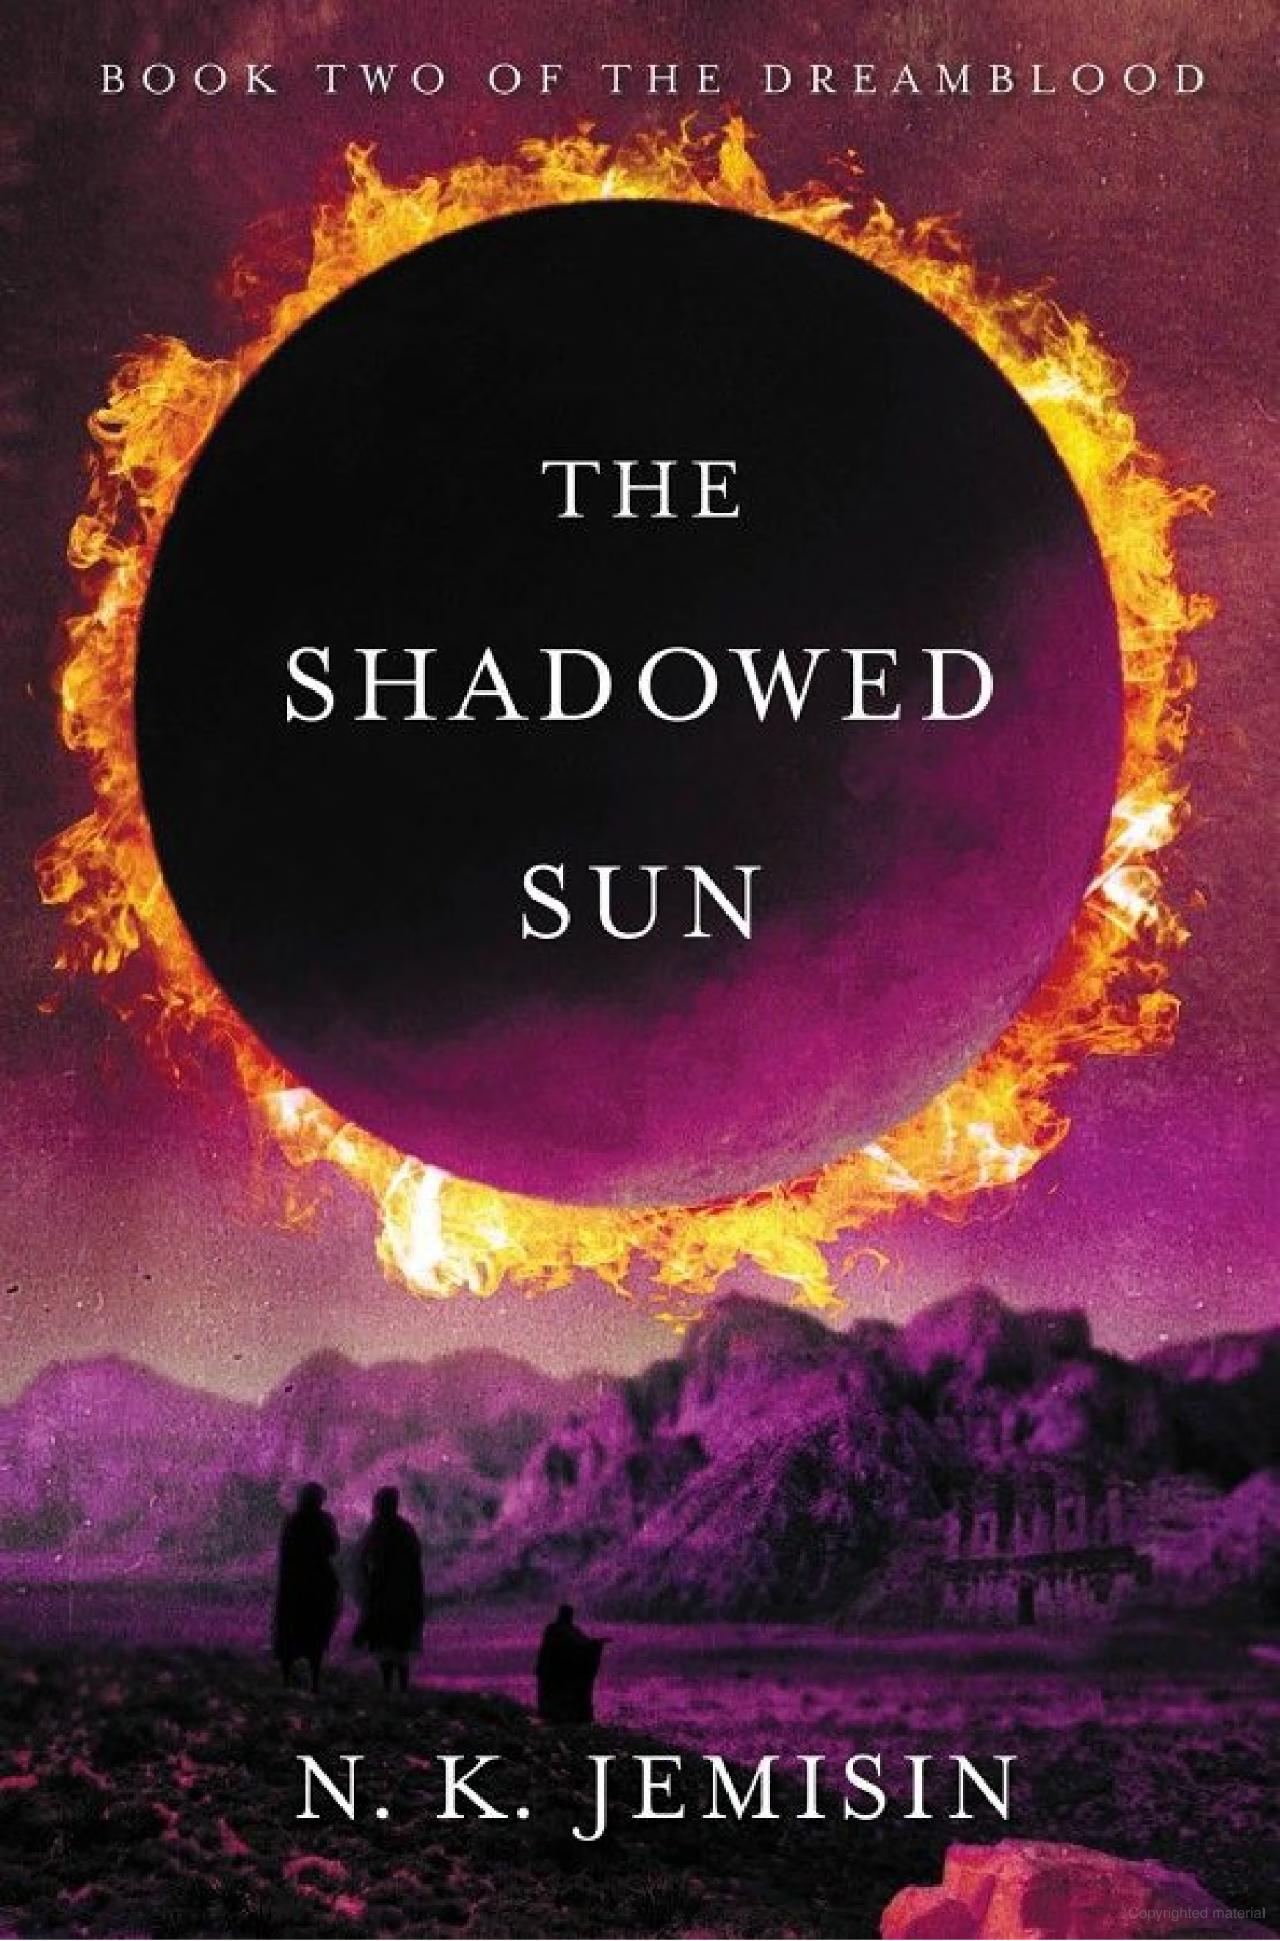 N. K. Jemisin: The Shadowed Sun (2012, Orbit)